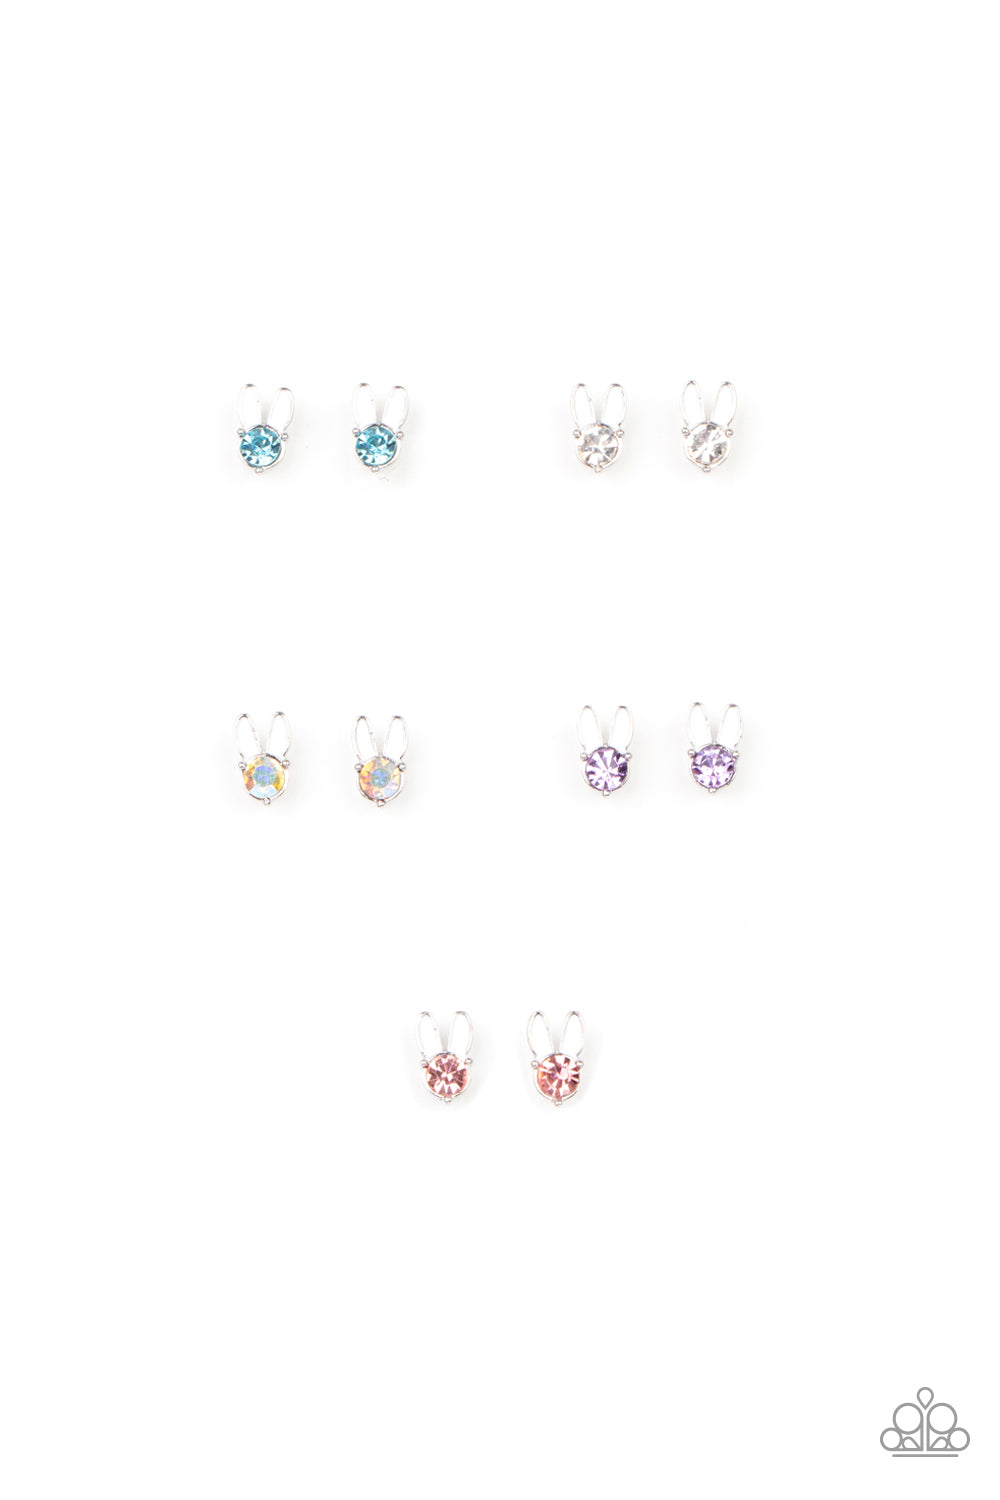 Paparazzi Starlet Shimmer Bunny Ears Earring Kit for Little Divas - Easter 2021 (P5SS-MTXX-344XX)